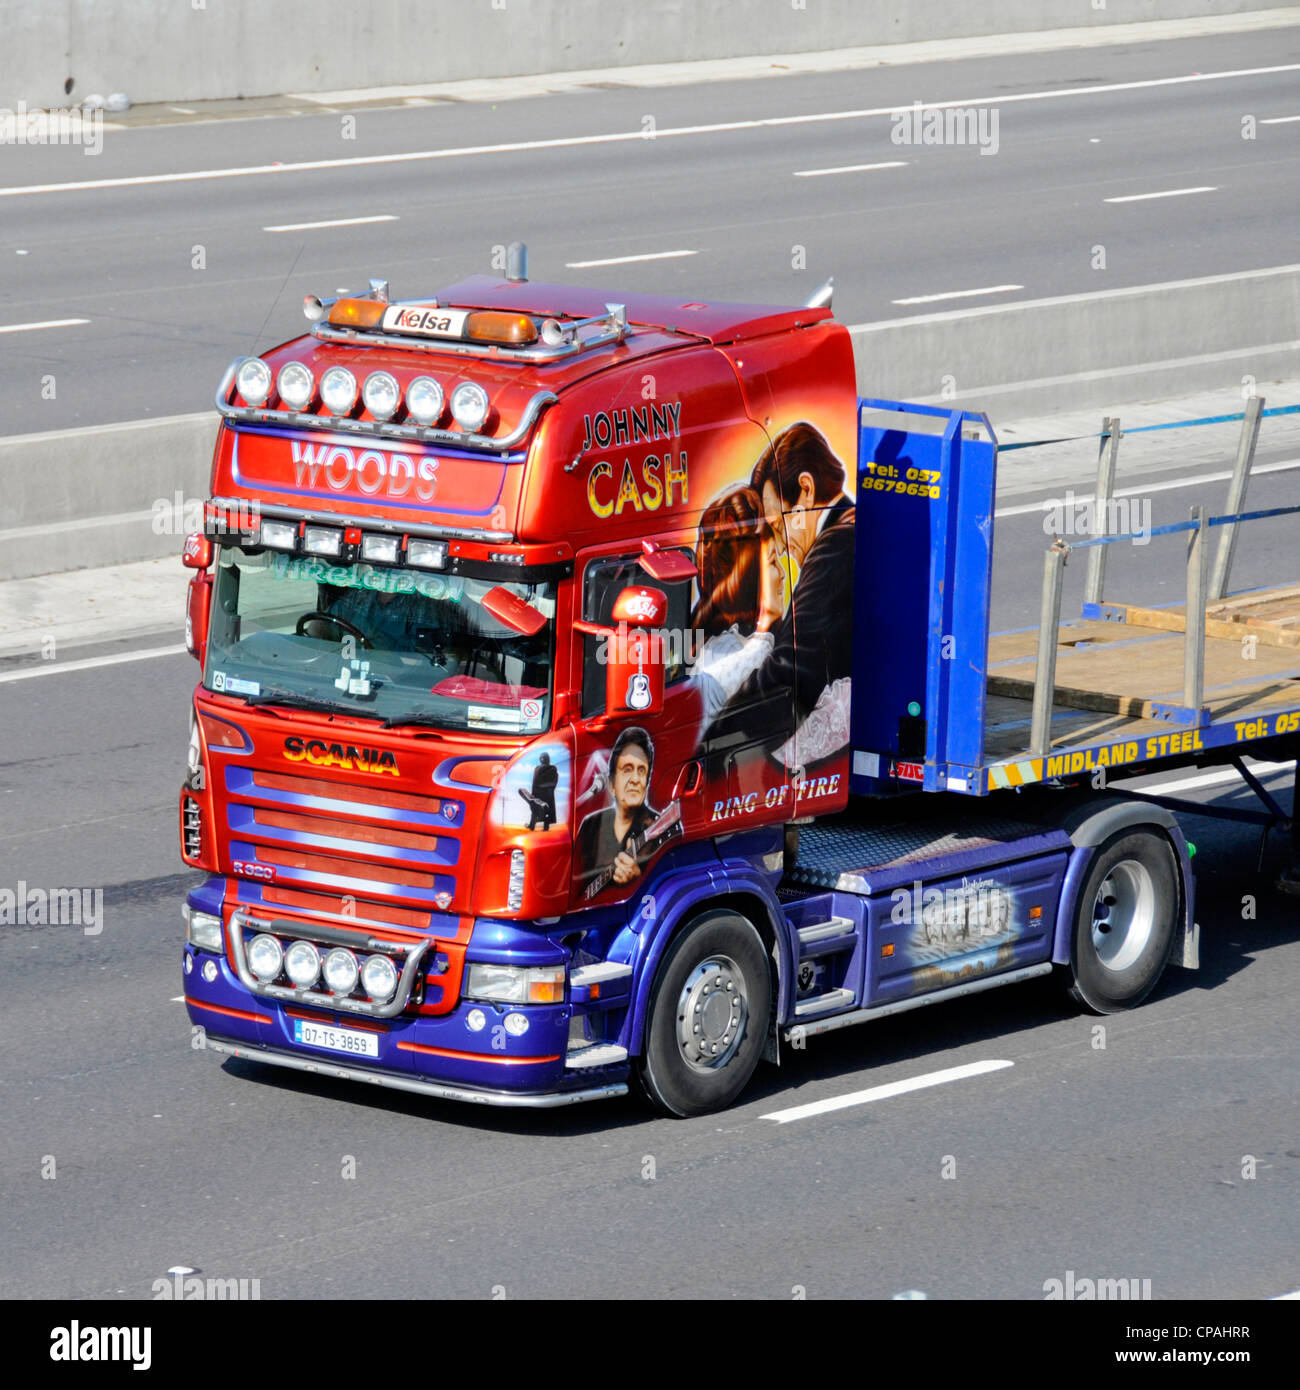 Johnny Cash Truck illustration graphique de face de l'unité de tracteur semi-cabine Scania et remorque à plateau roulant le long de la route autoroutière du Royaume-Uni en Angleterre Banque D'Images